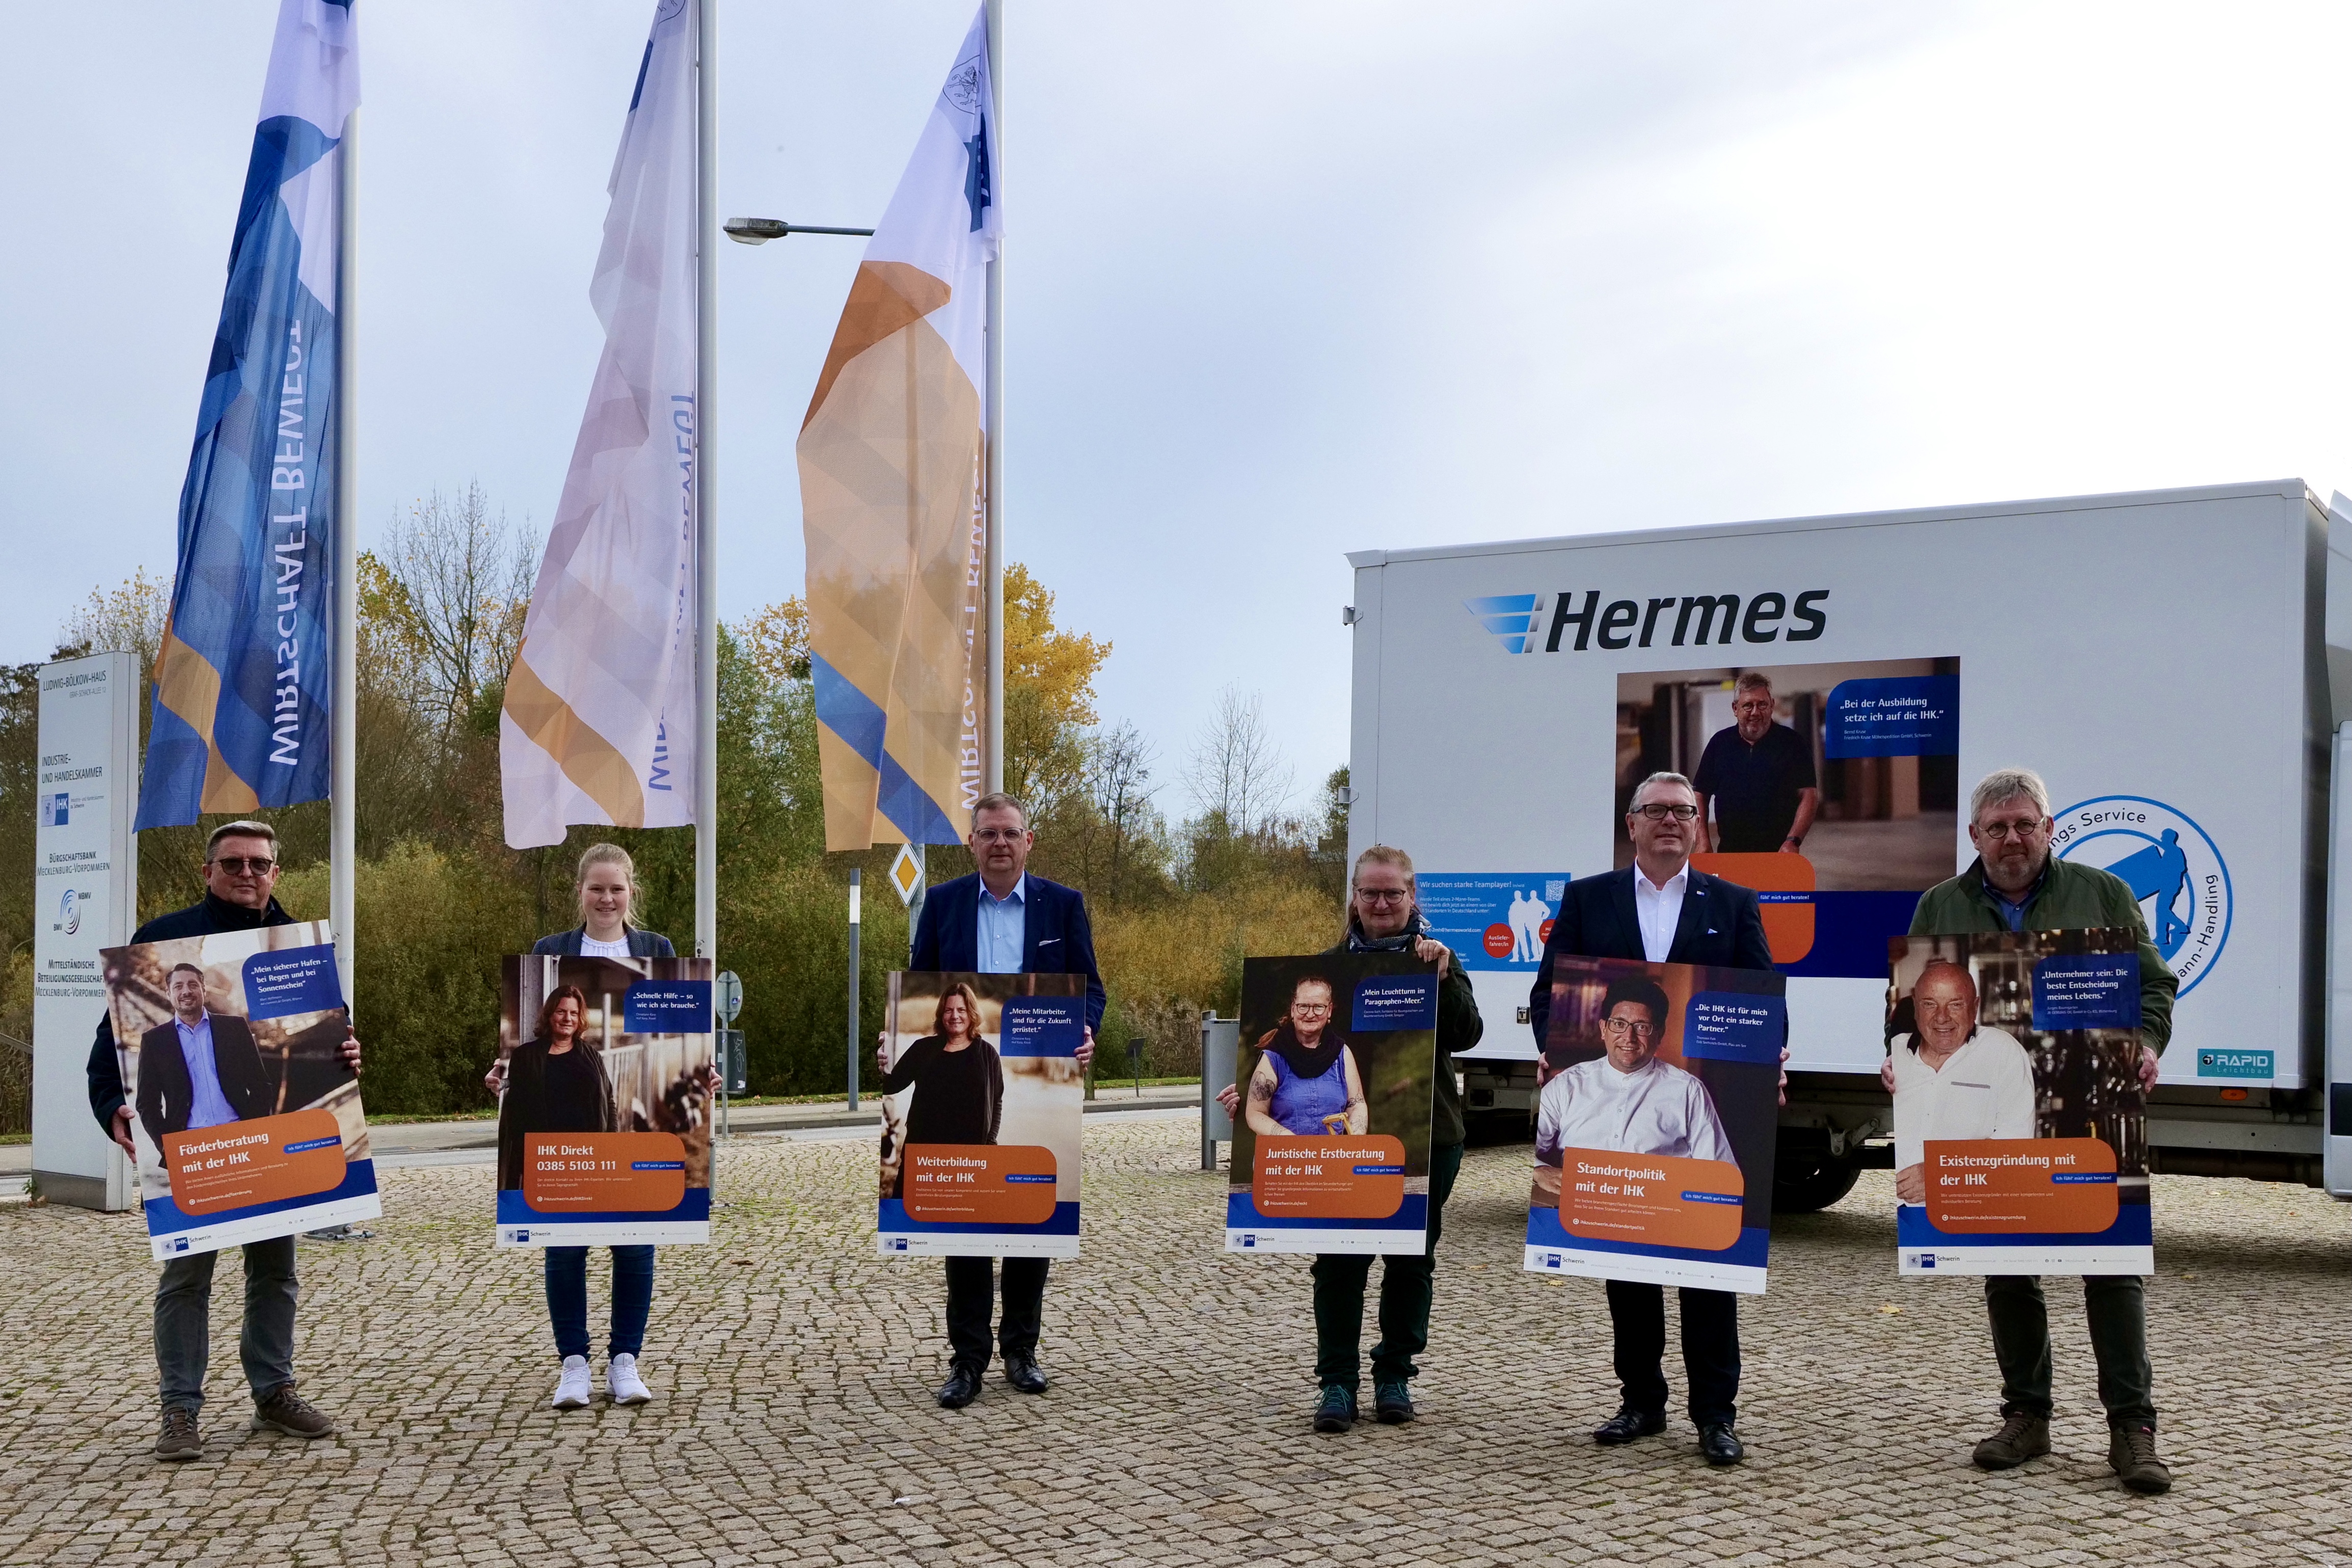 IHK Schwerin schärft mit neuer Kampagne Profil als regionale Dienstleisterin